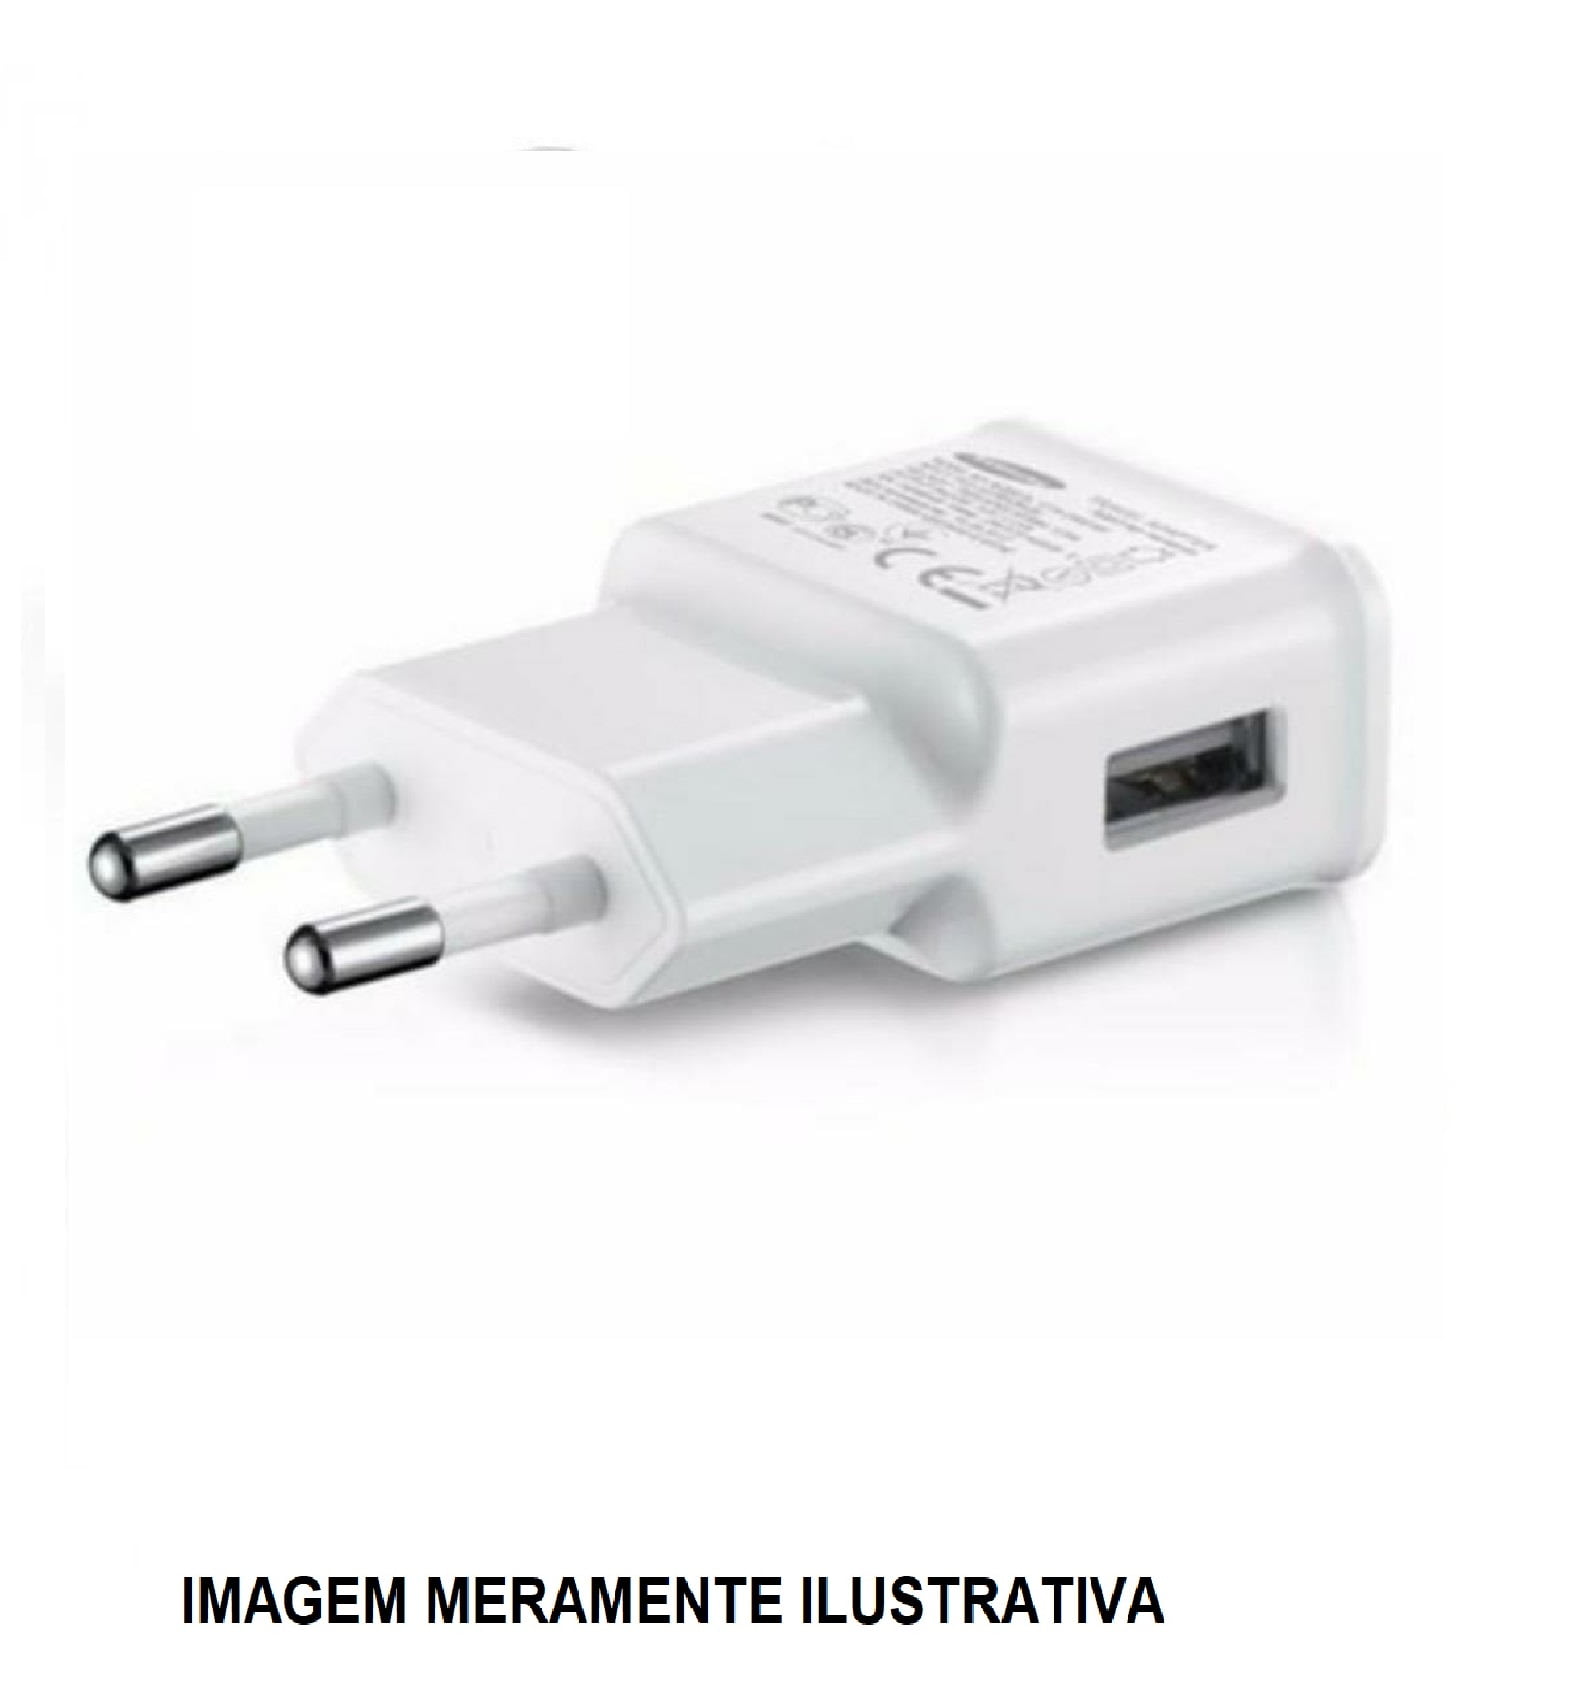 FONTE 5V 2A USB CARREGADOR DE CELULAR UNIVERSAL